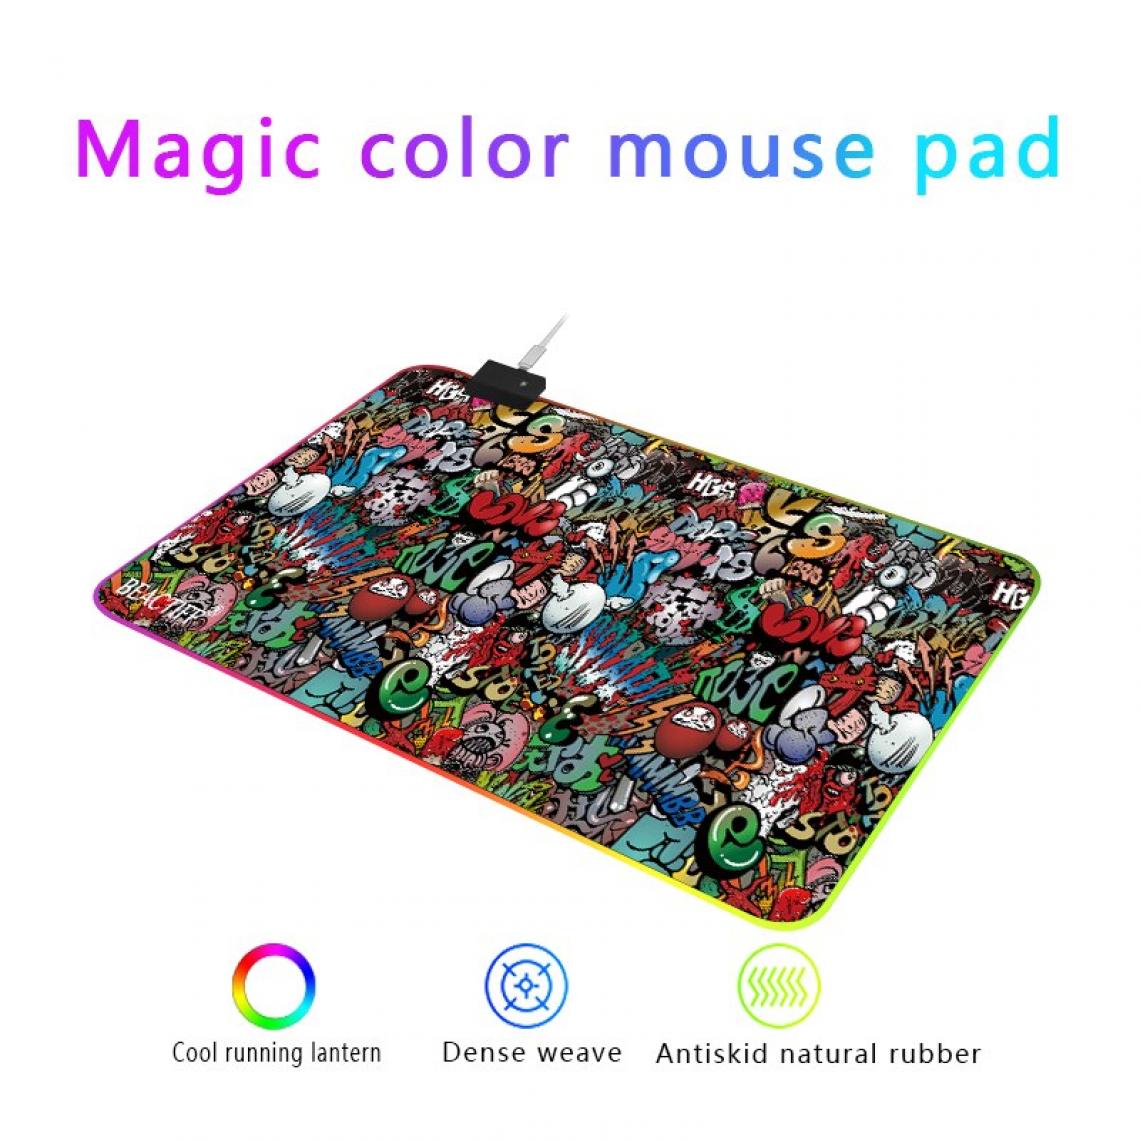 Universal - 300 * 800 Graffiti Magic Couleur Tissu en caoutchouc non coulissant RVB Gaming Mouse Pad Lampe LED Table Mouse Pad Large Mouse Pad(Coloré) - Tapis de souris